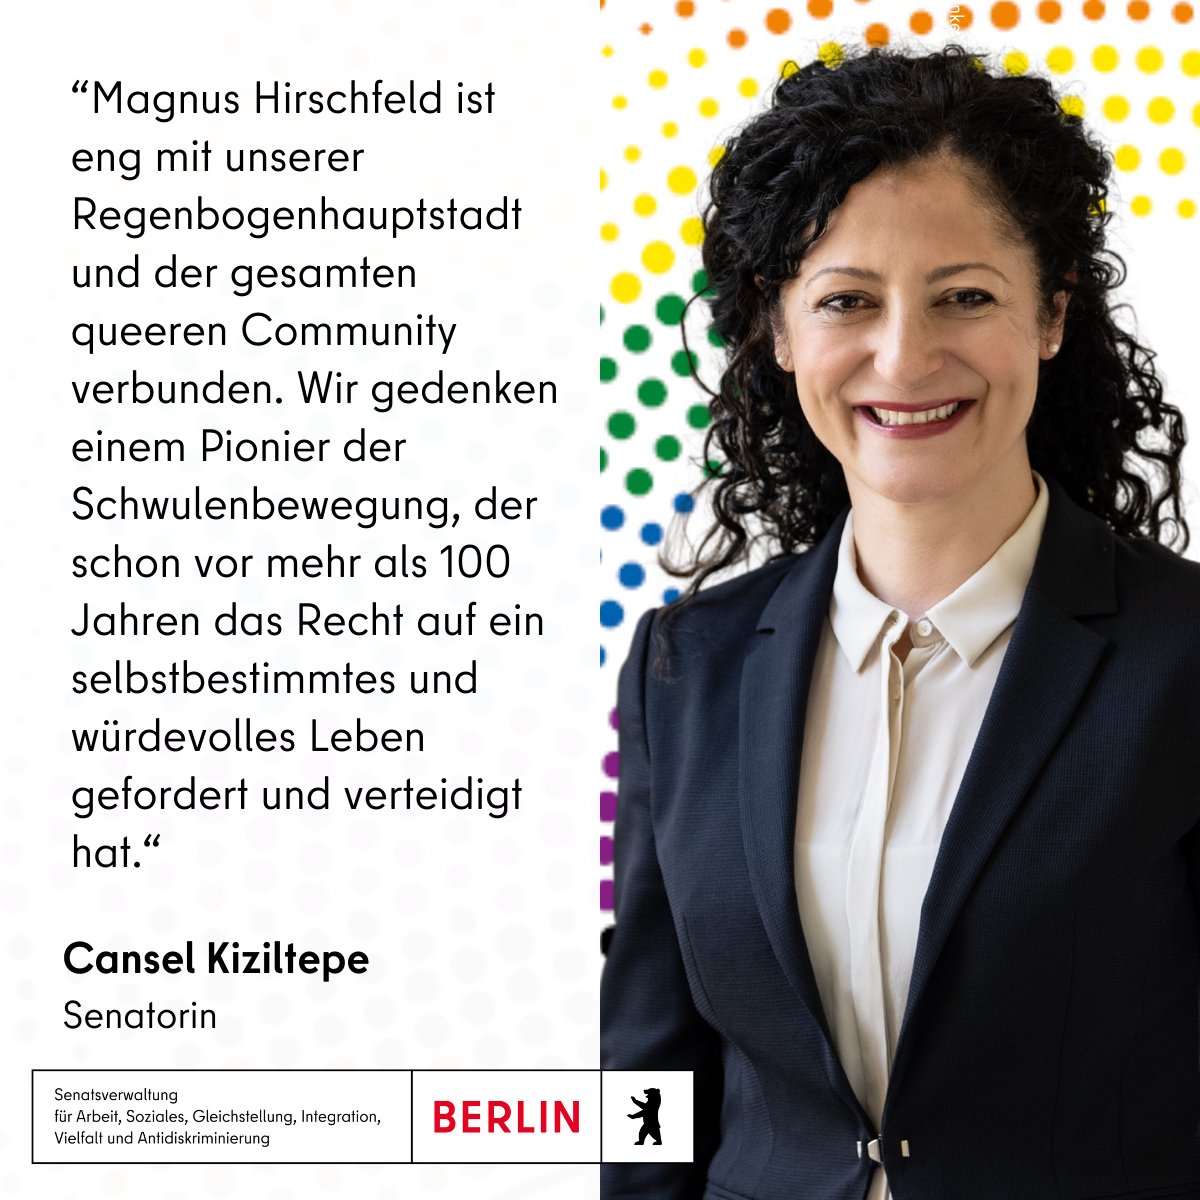 Am 14. Mai begeht das Land #Berlin erstmals den landesweiten Magnus Hirschfeld Tag 🏳️‍🌈. Es würdigt damit den deutschen Arzt und Sexualforscher Magnus Hirschfeld, der schwul, Sozialist, Jude und Mitbegründer der weltweit ersten Homosexuellen-Bewegung war. @CanselK